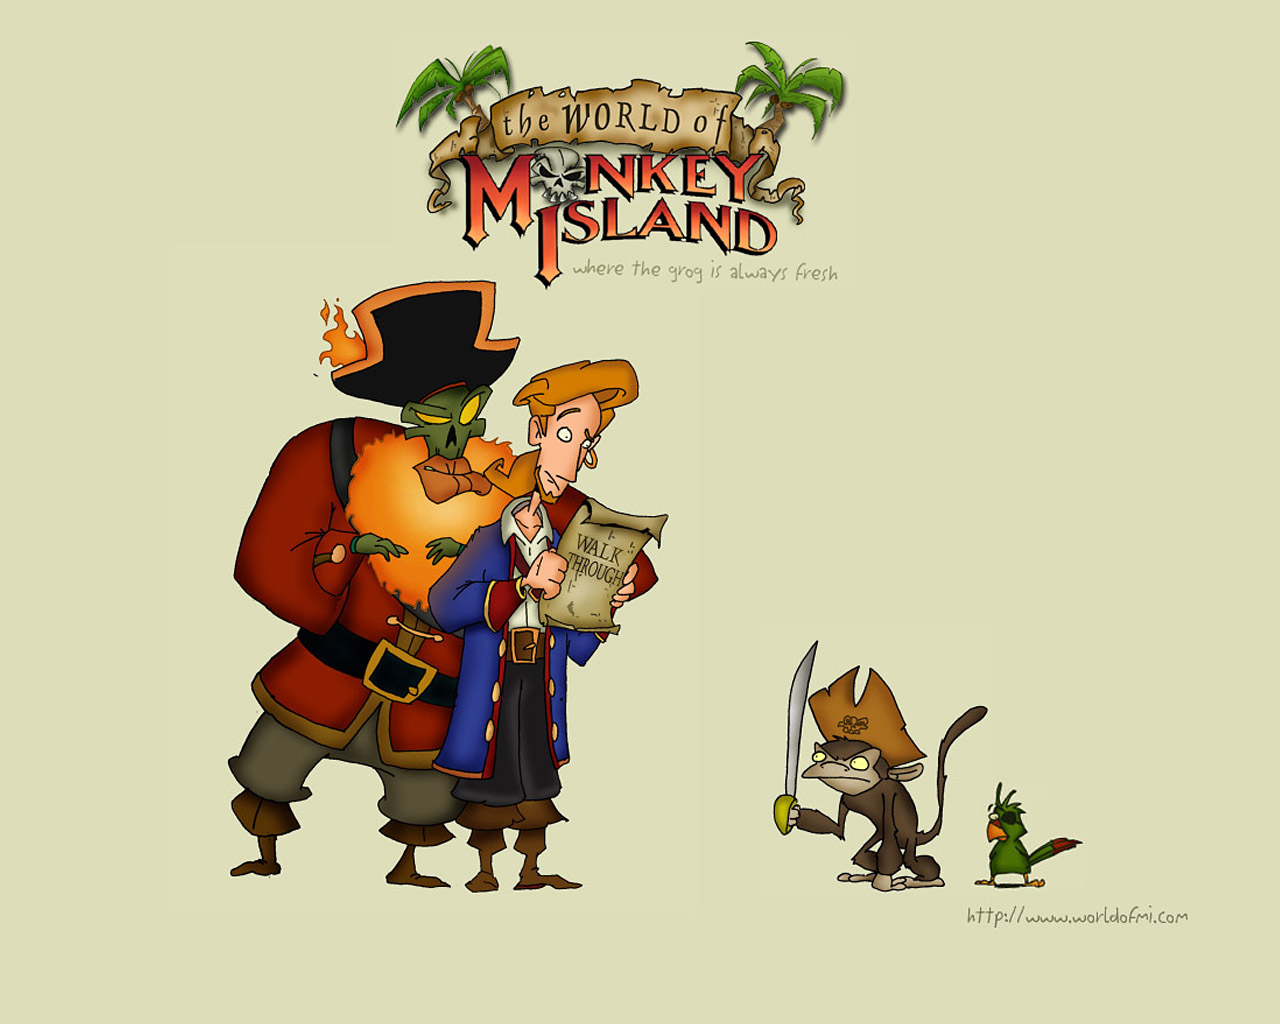 Laden Sie Tales Of Monkey Island HD-Desktop-Hintergründe herunter